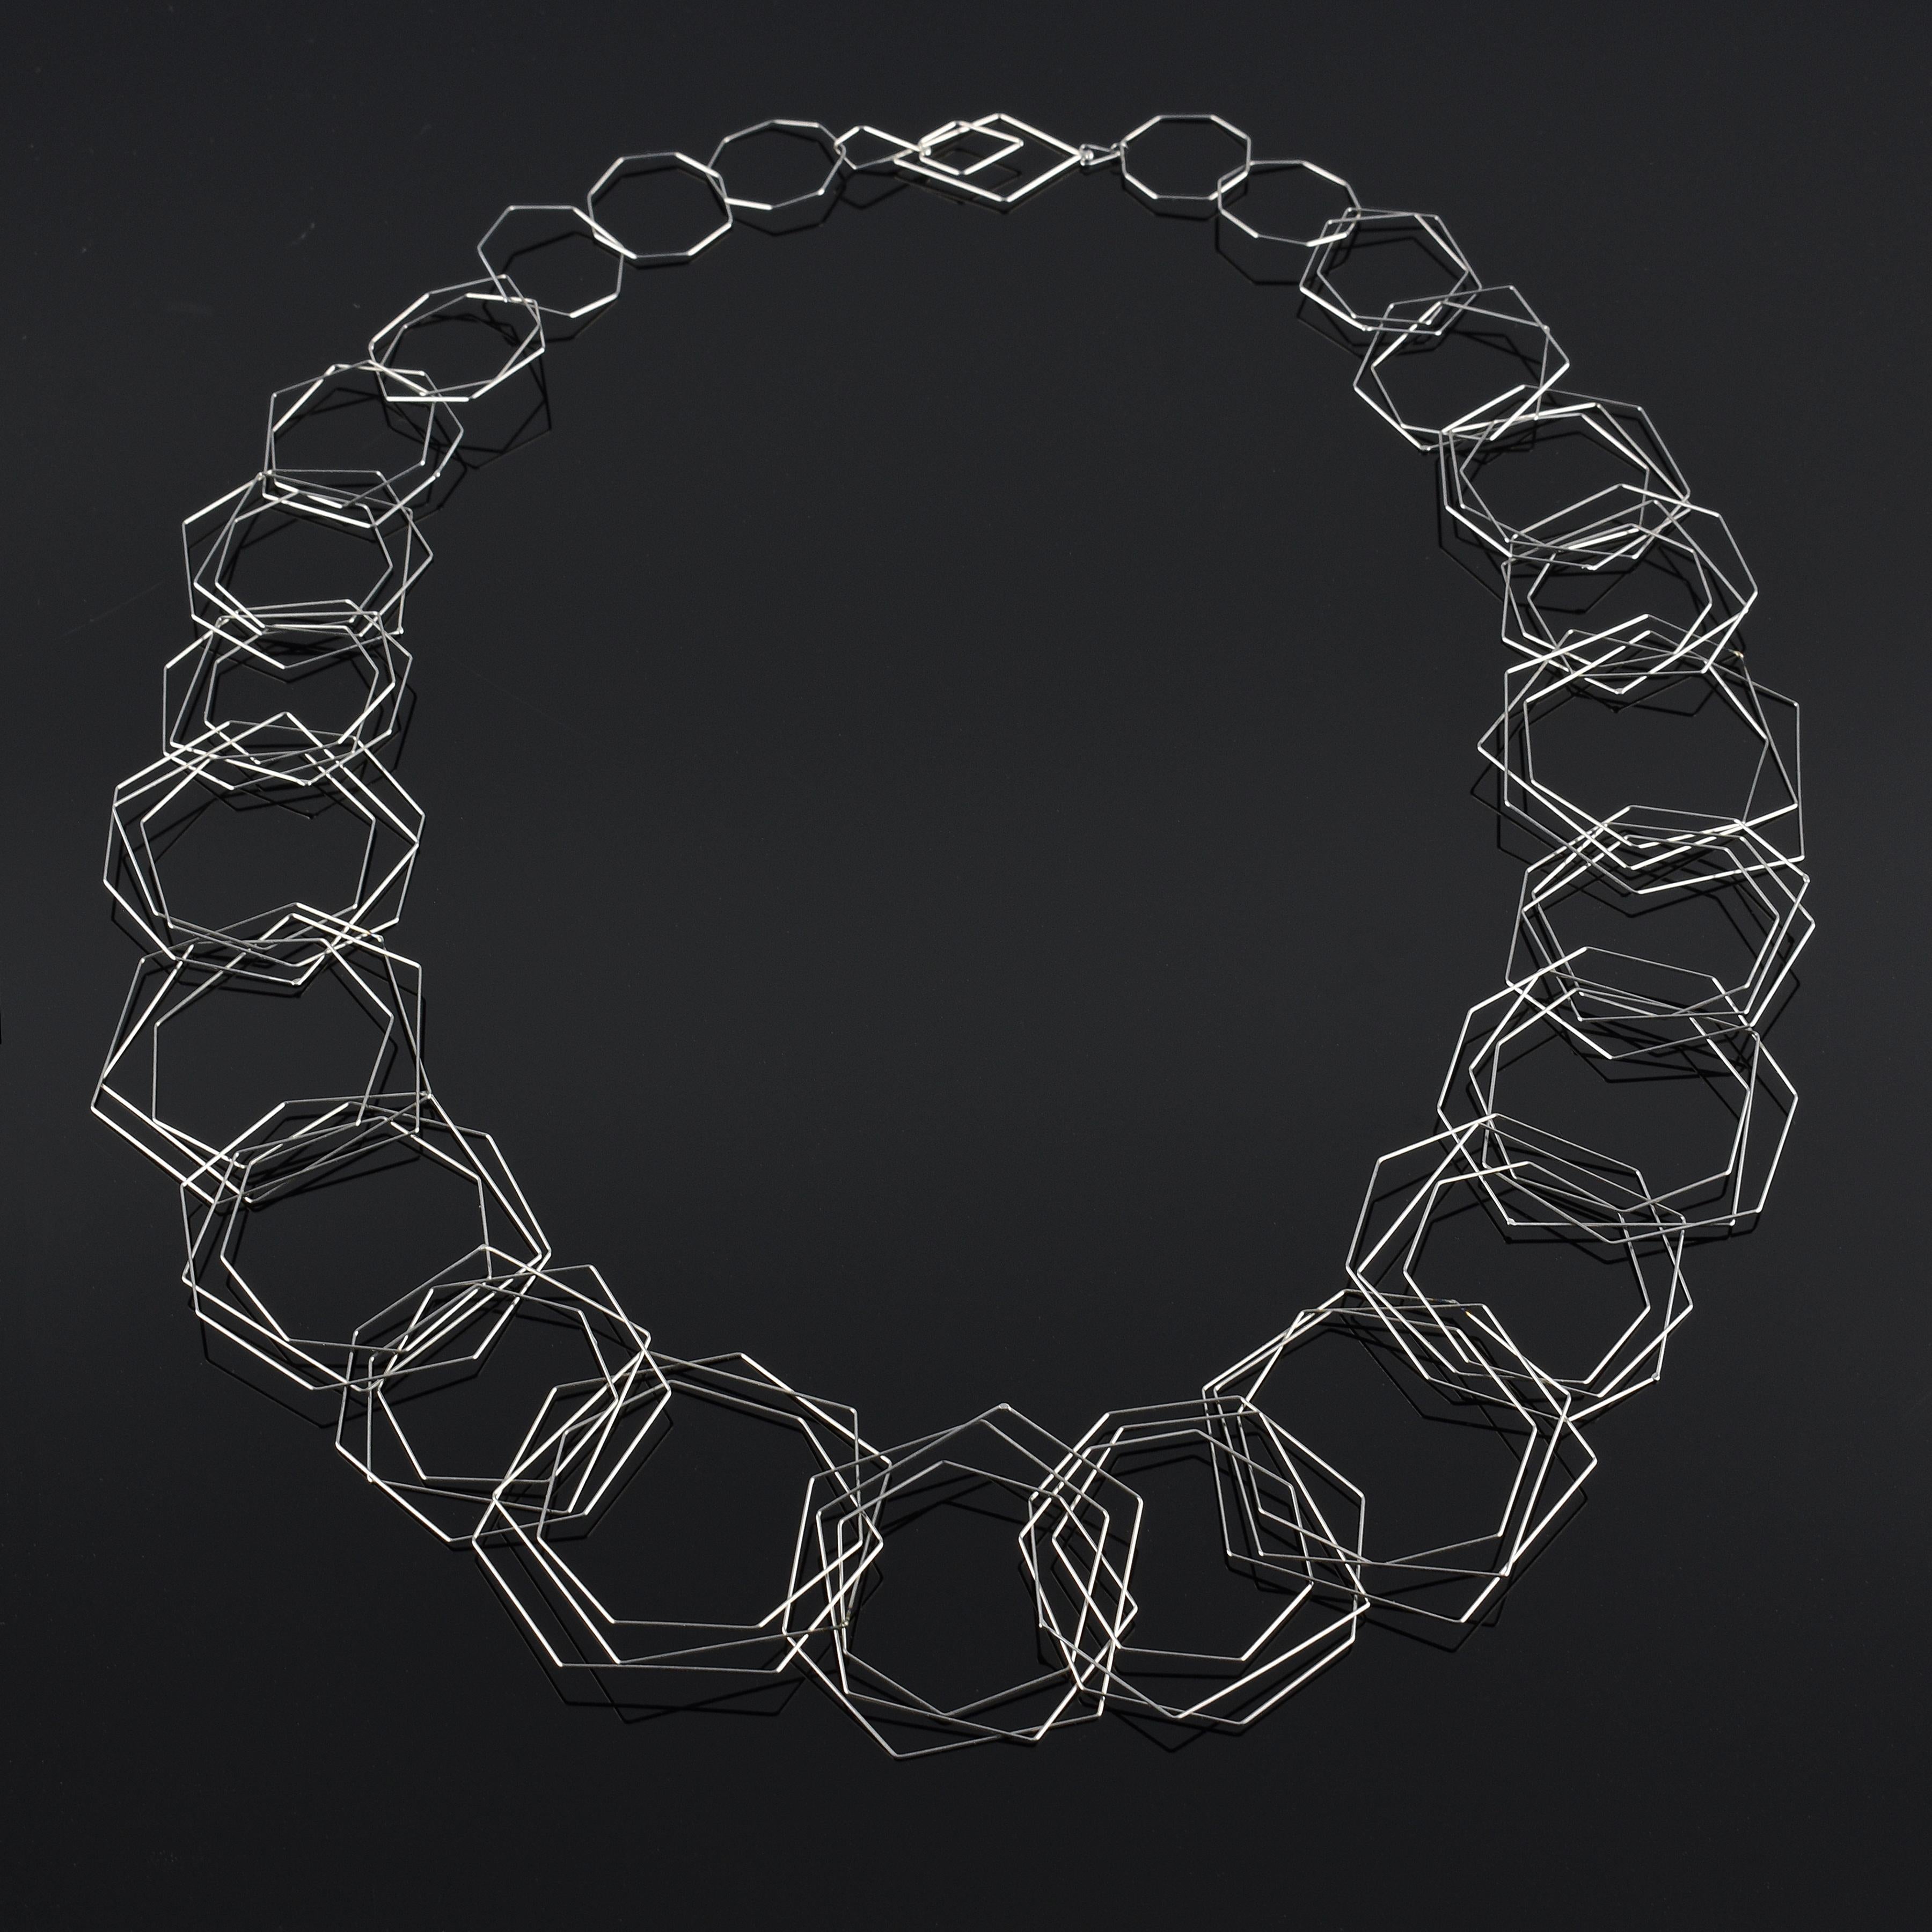 "Tenitische Halskette  Long „“ eine zeitgenössische, hochwertige Edelstahl-Halskette